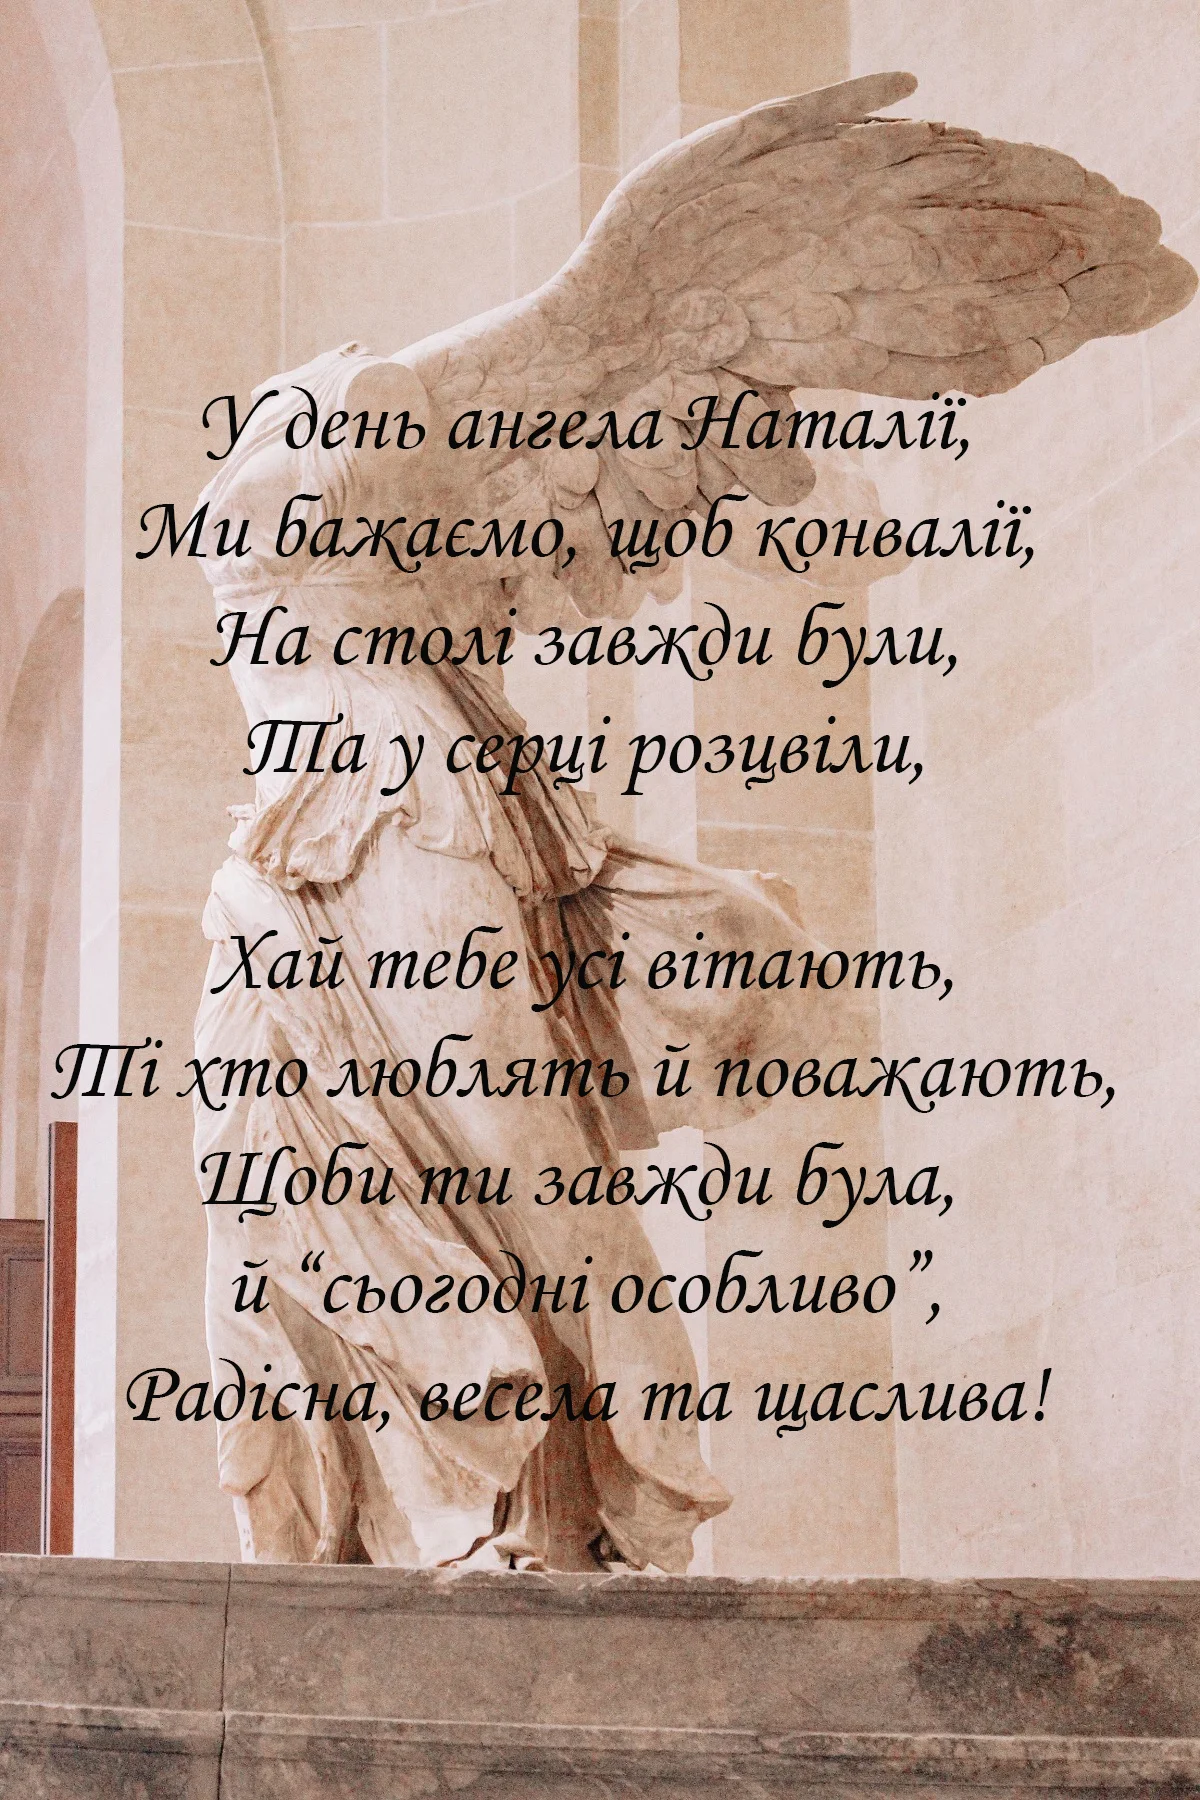 День ангела Натальи: красивые картинки и открытки на украинском языке - фото 490075